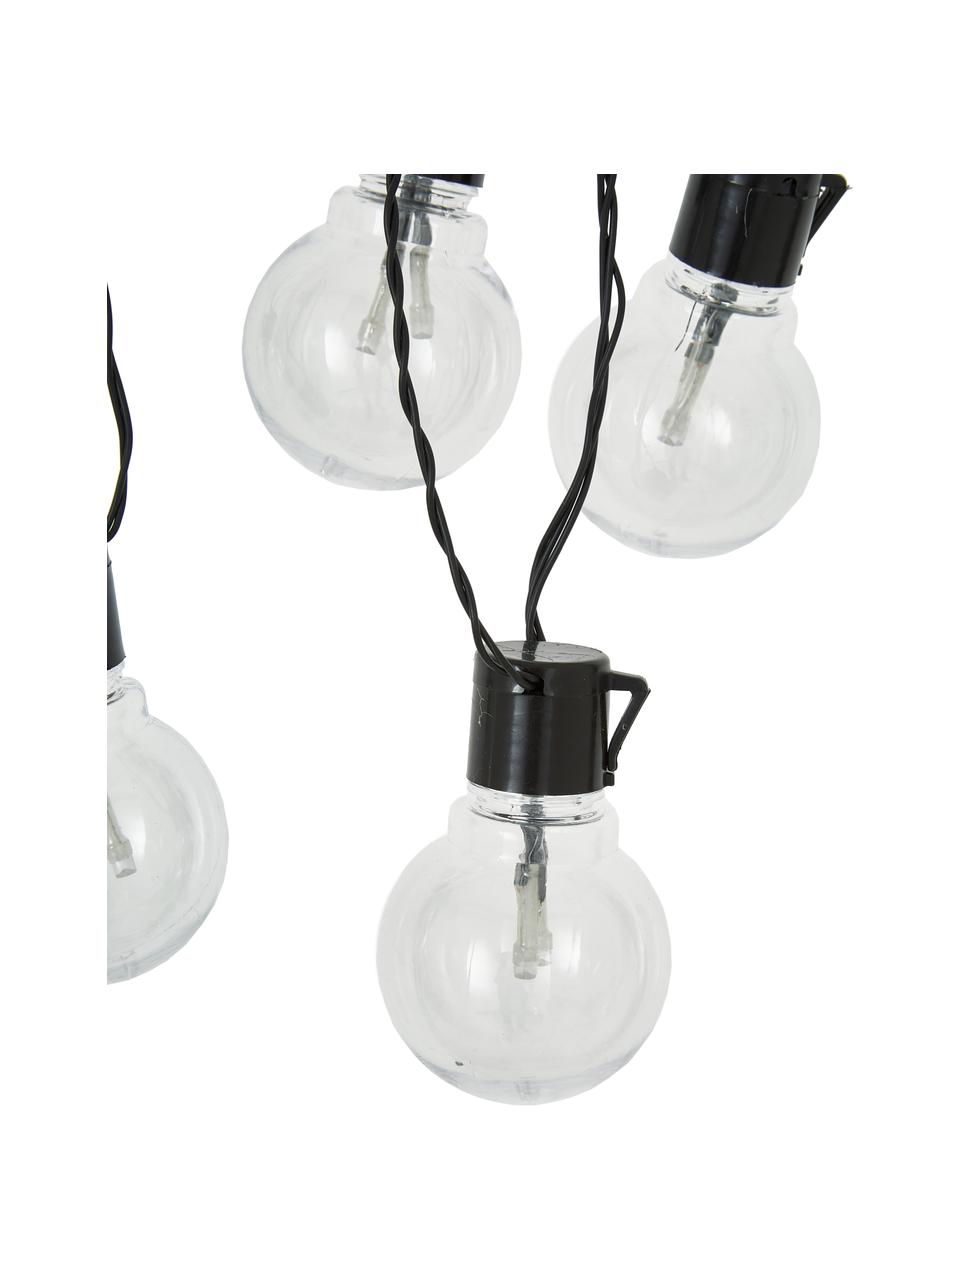 Svetelná vonkajšia LED reťaz  Partaj, 950 cm, 16 lampiónov, Čierna, D 950 cm